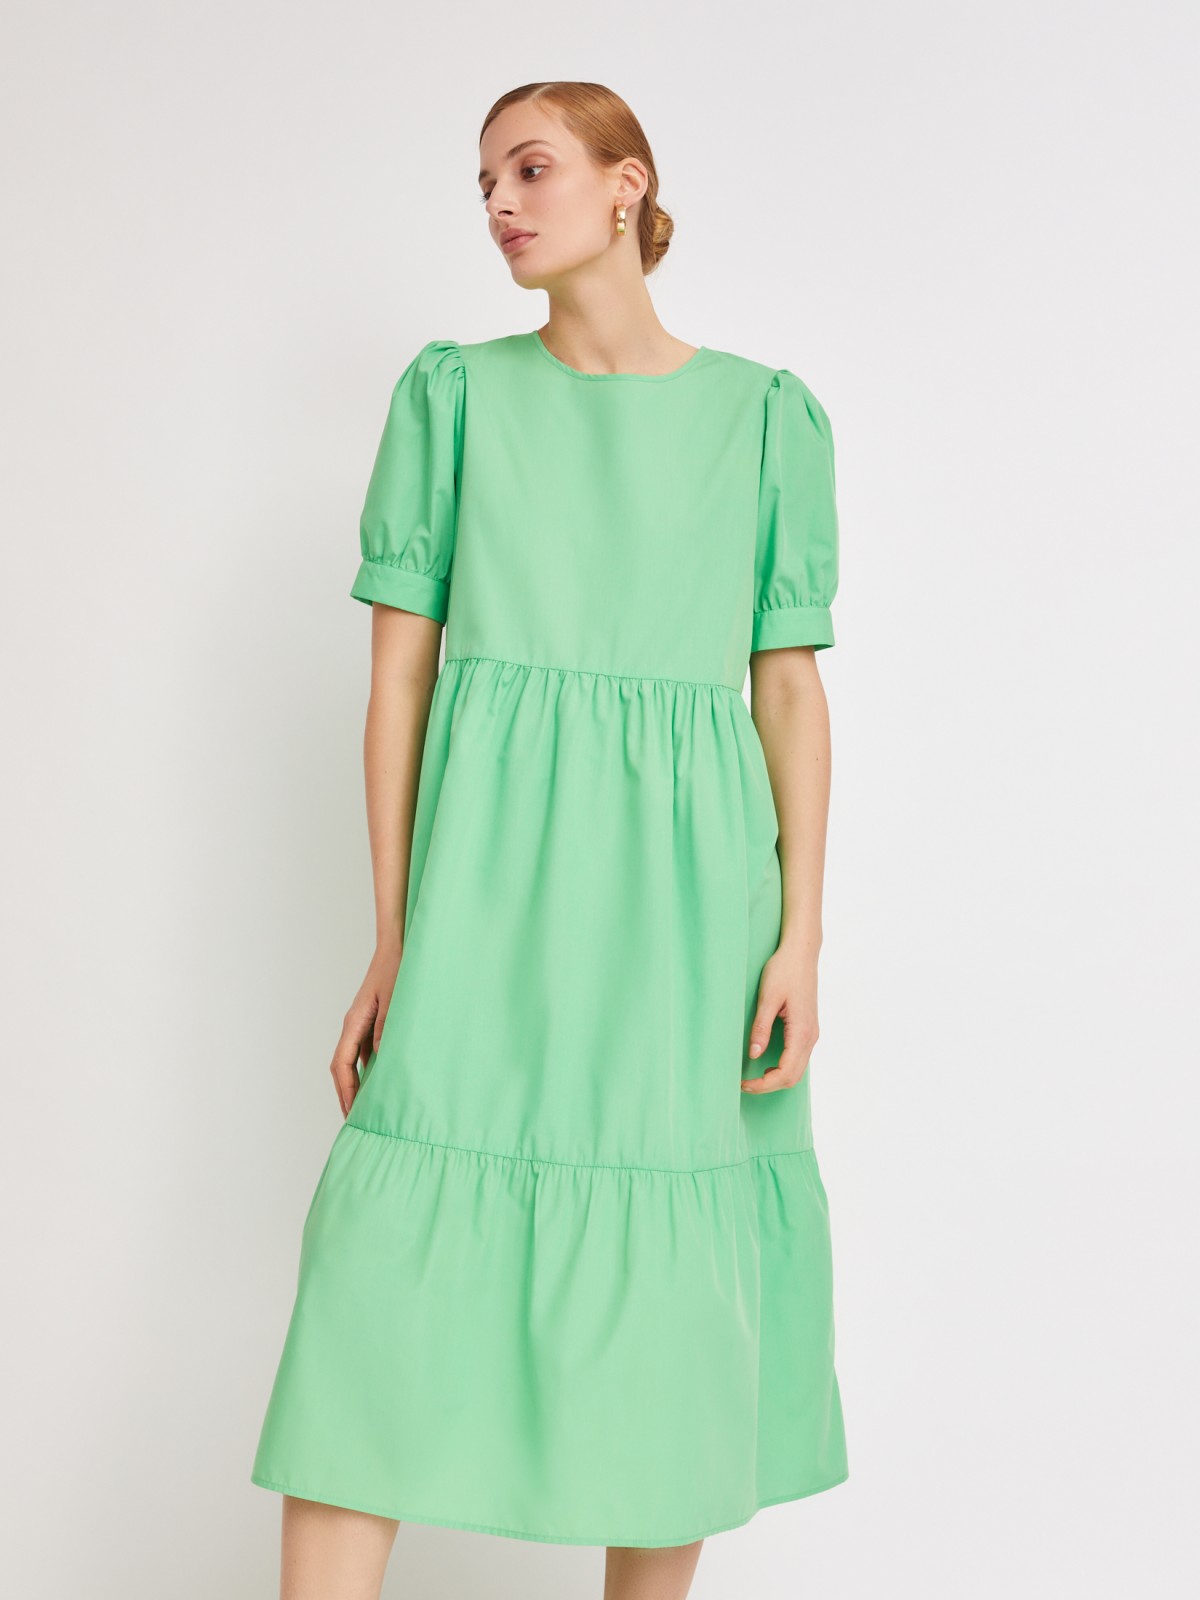 Ярусное платье длины миди zolla 223228259053, цвет светло-зеленый, размер XS - фото 3